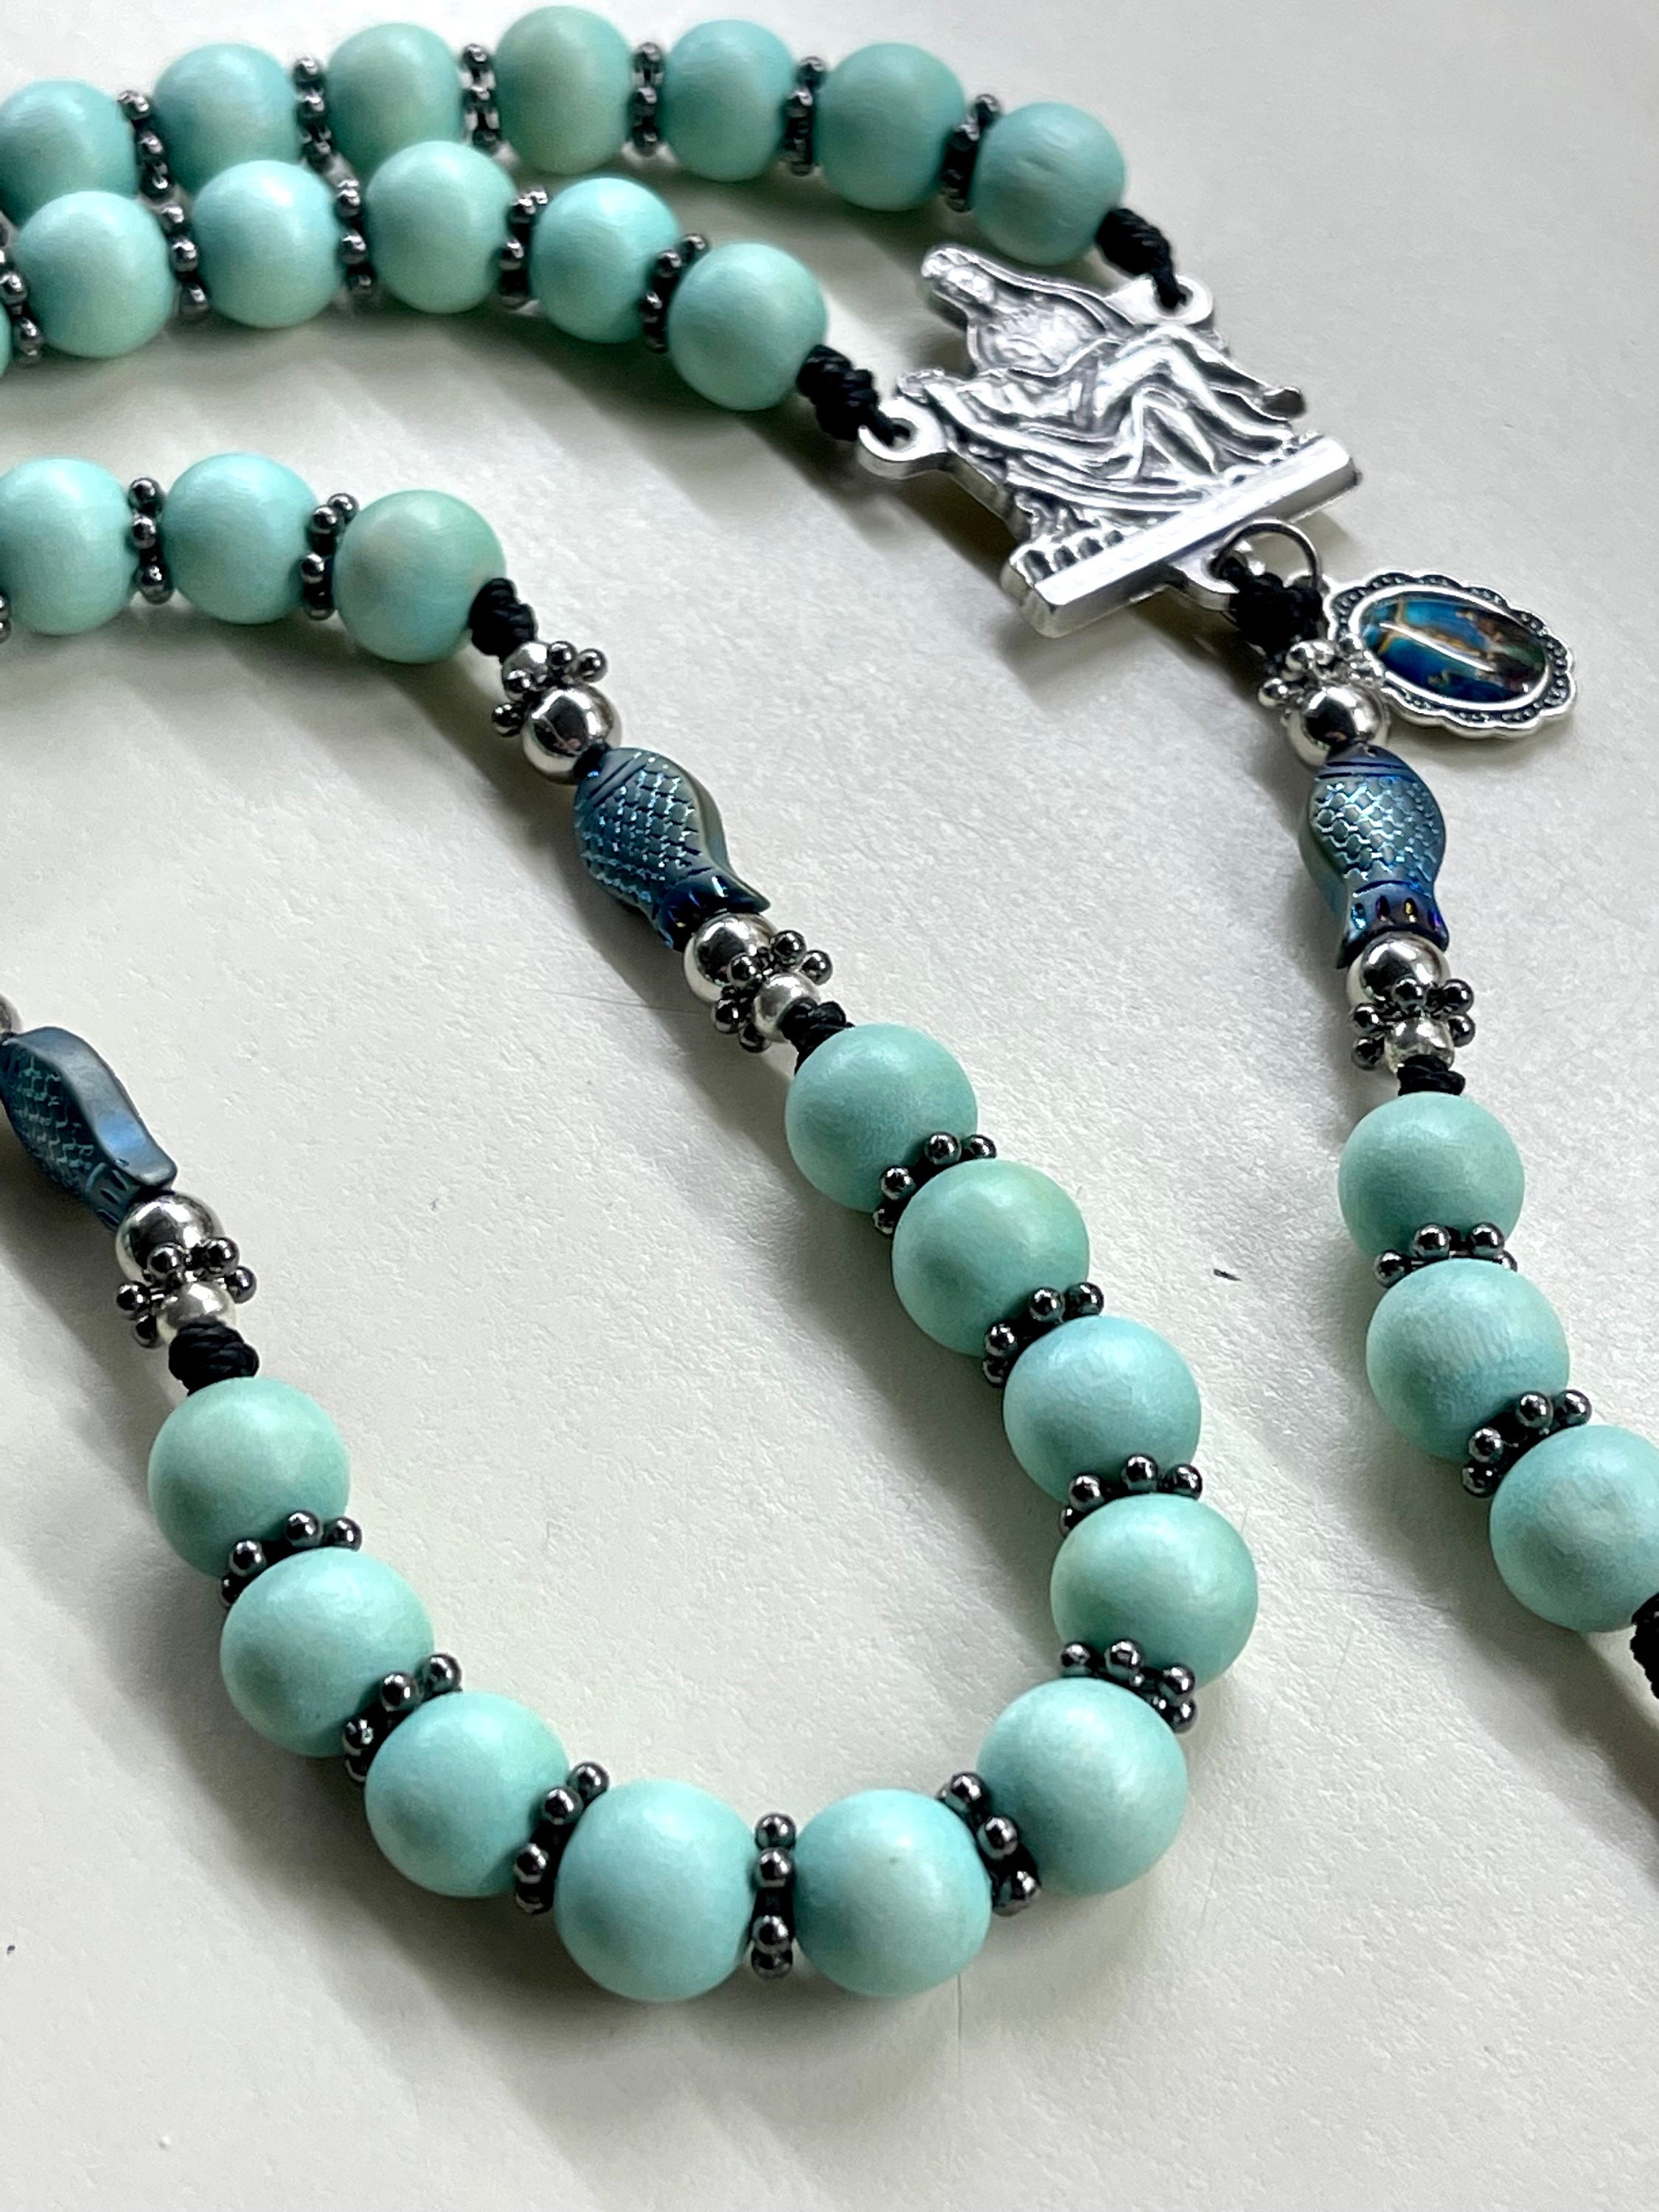 Rosary Beads the Chosen - Etsy